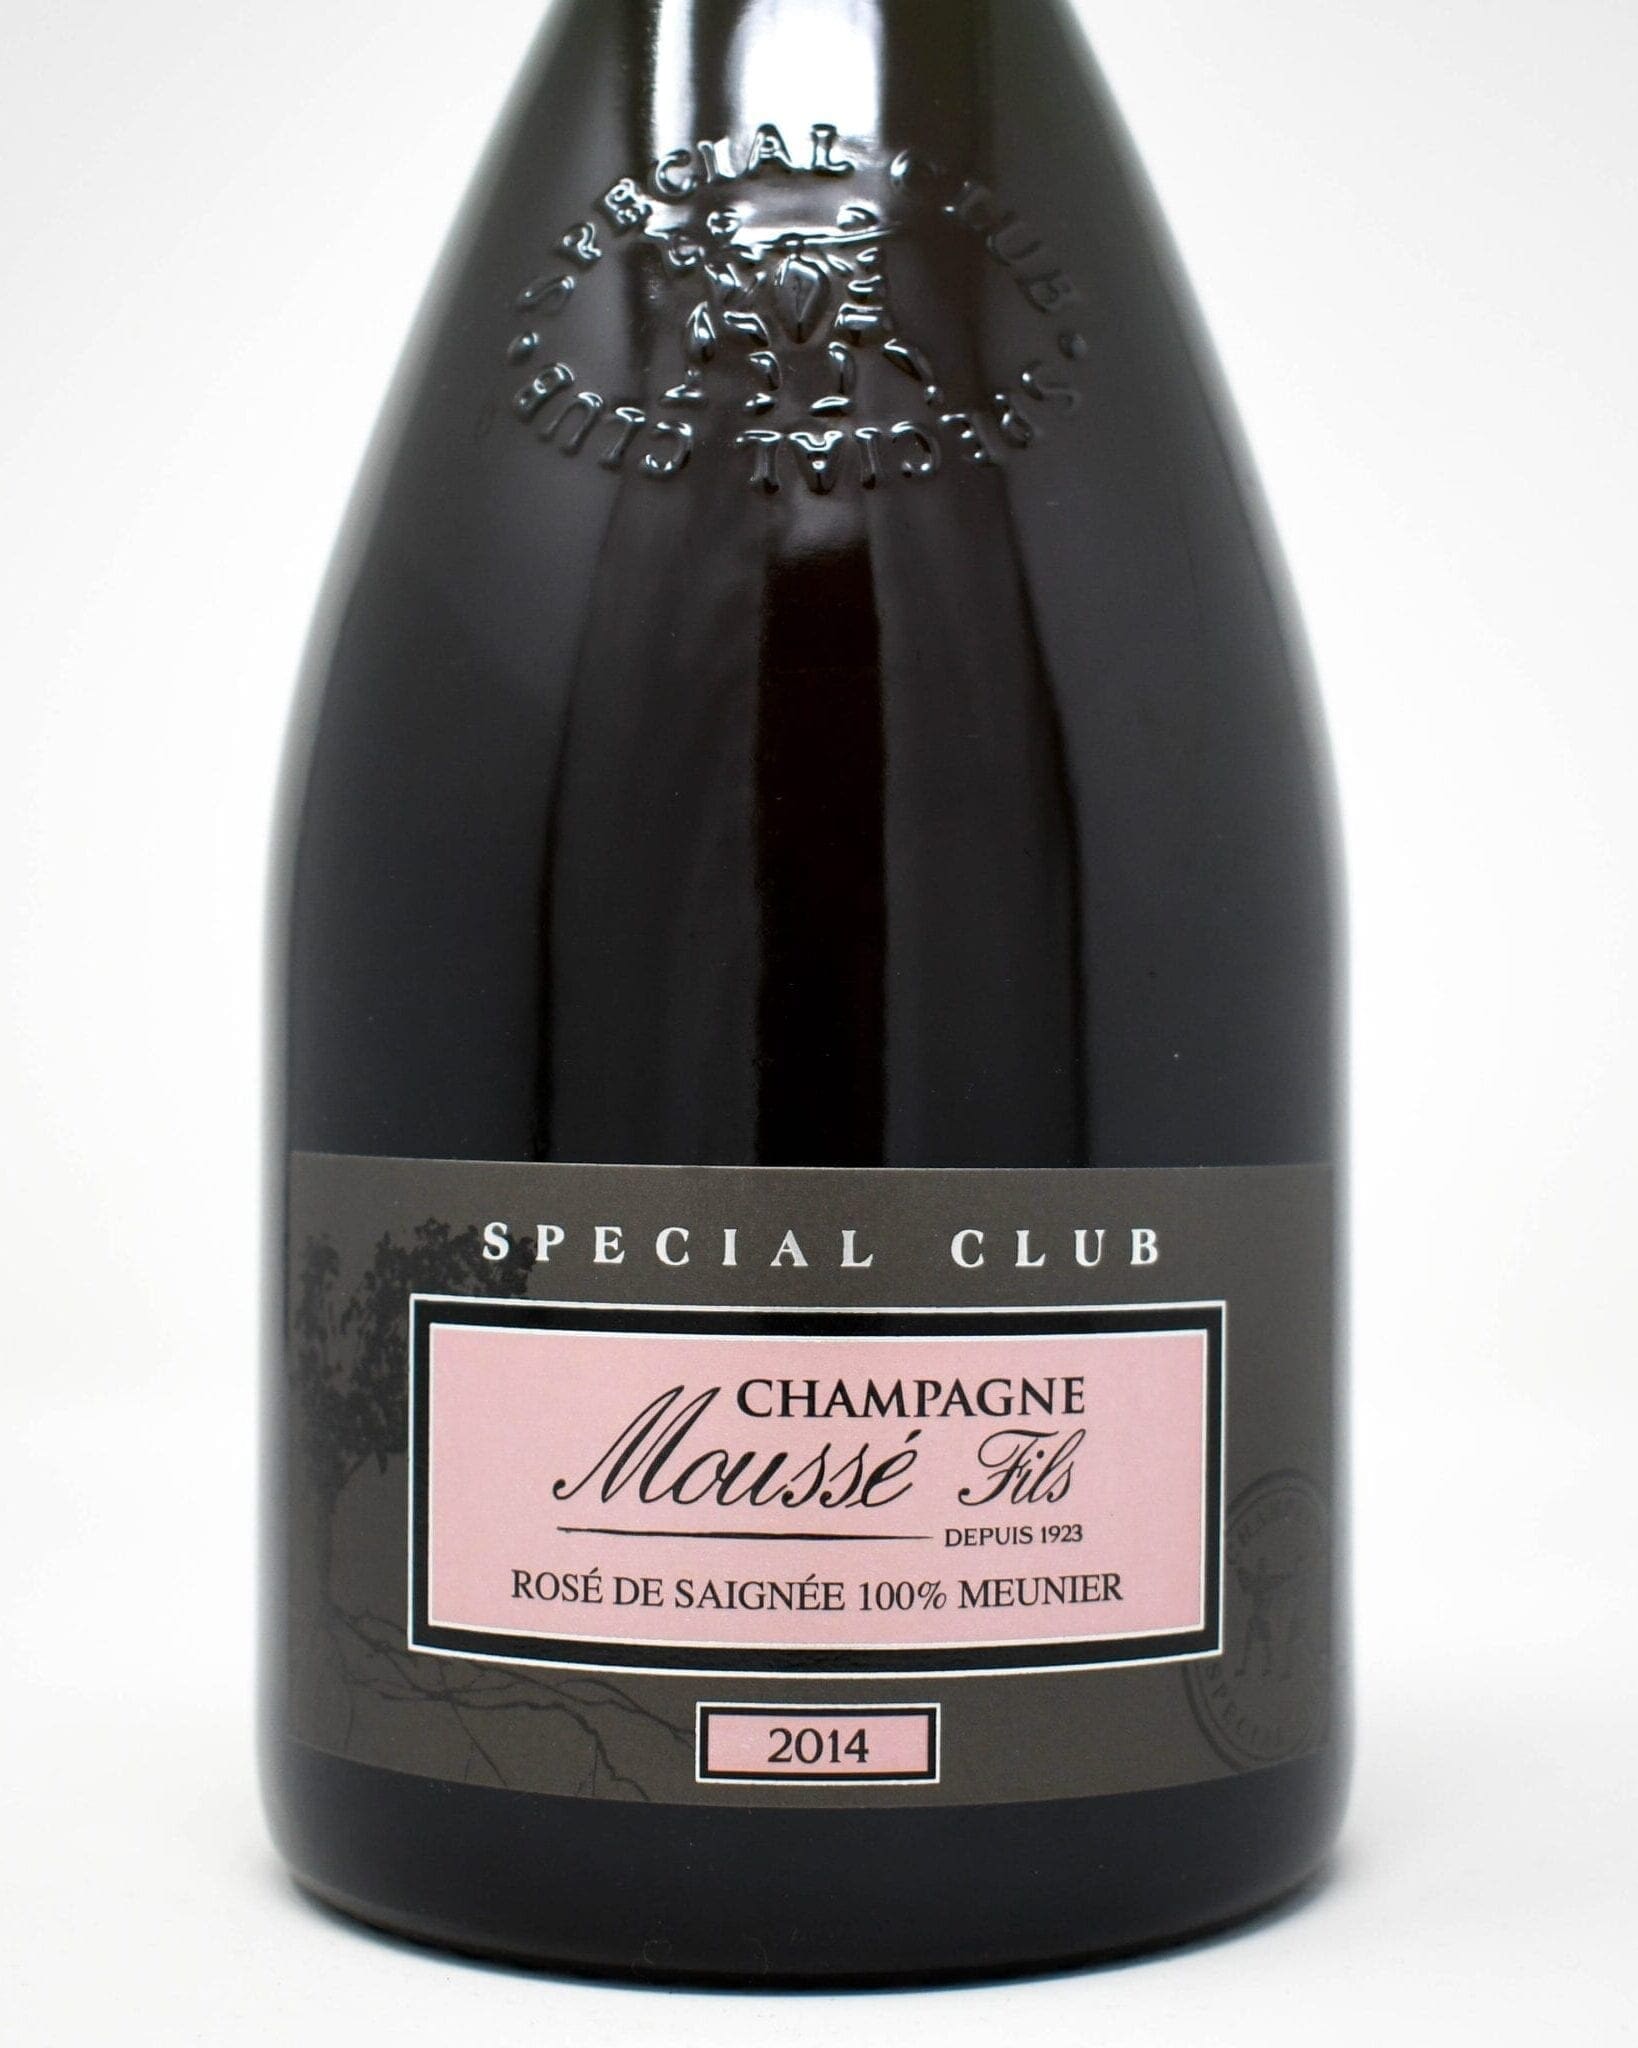 Champagne Mousse Fils Special Club, Rose de Saignee